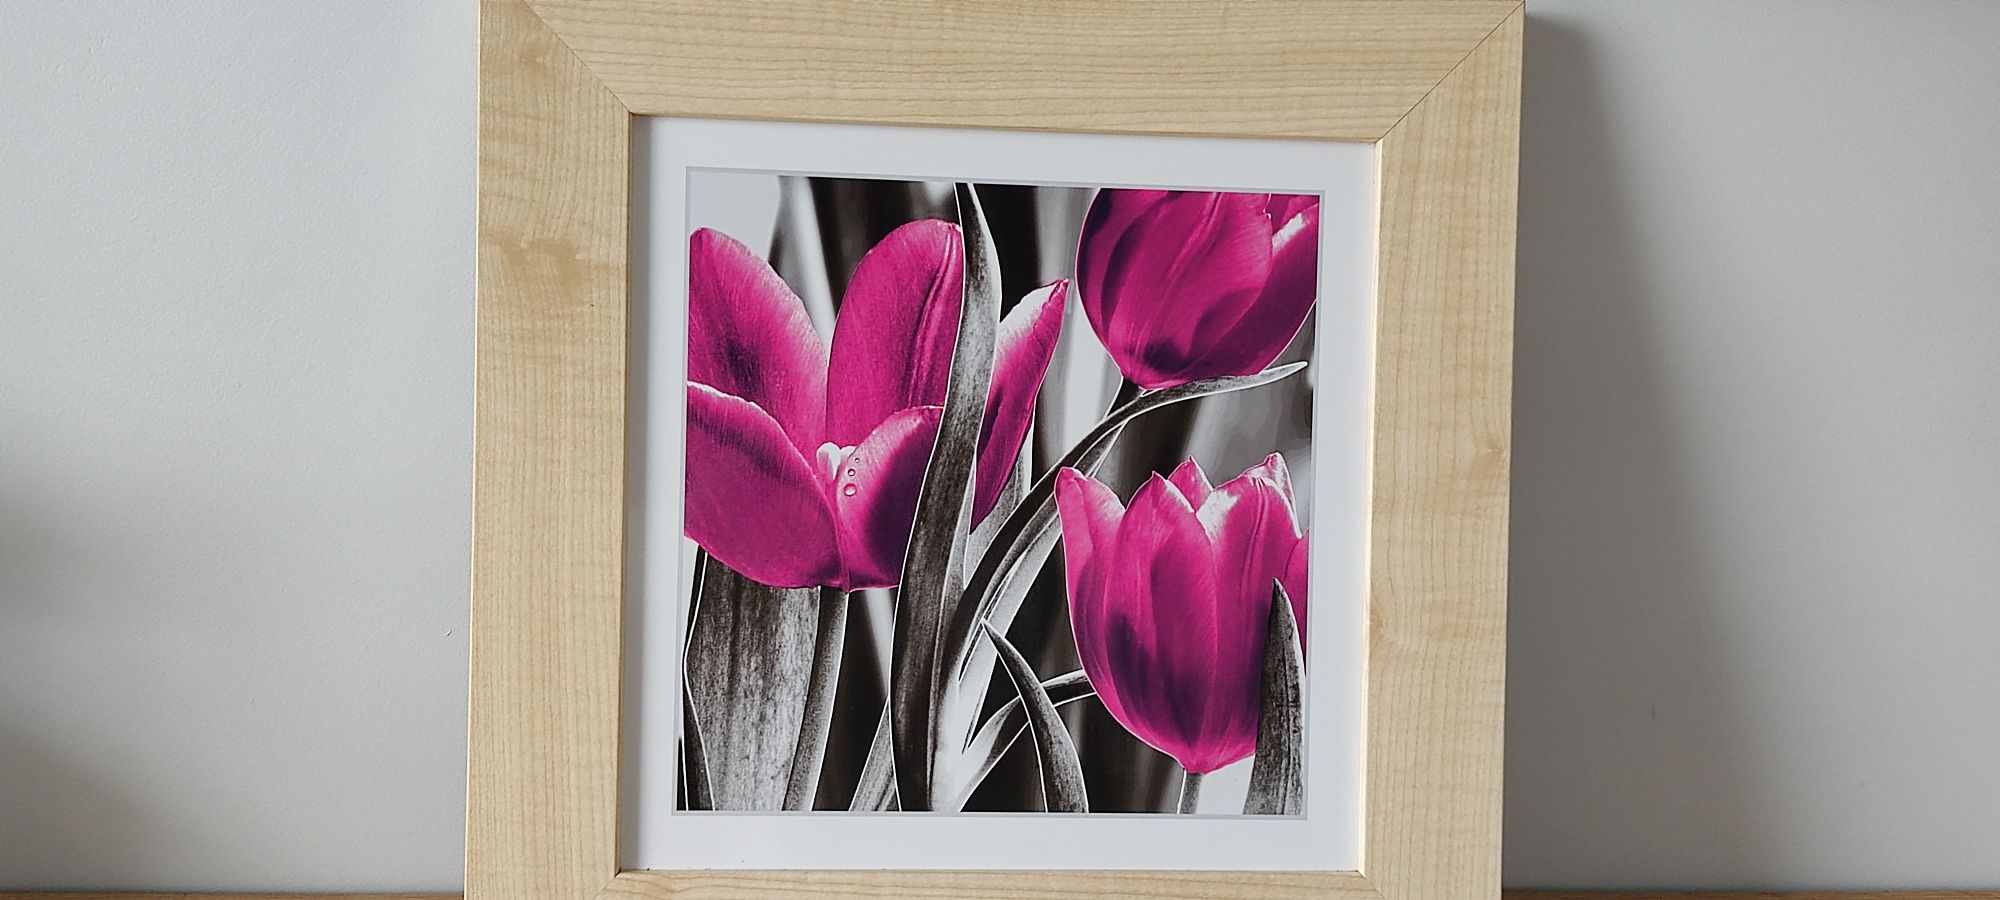 Obraz, obrazek kwiaty, tulipany 39x39